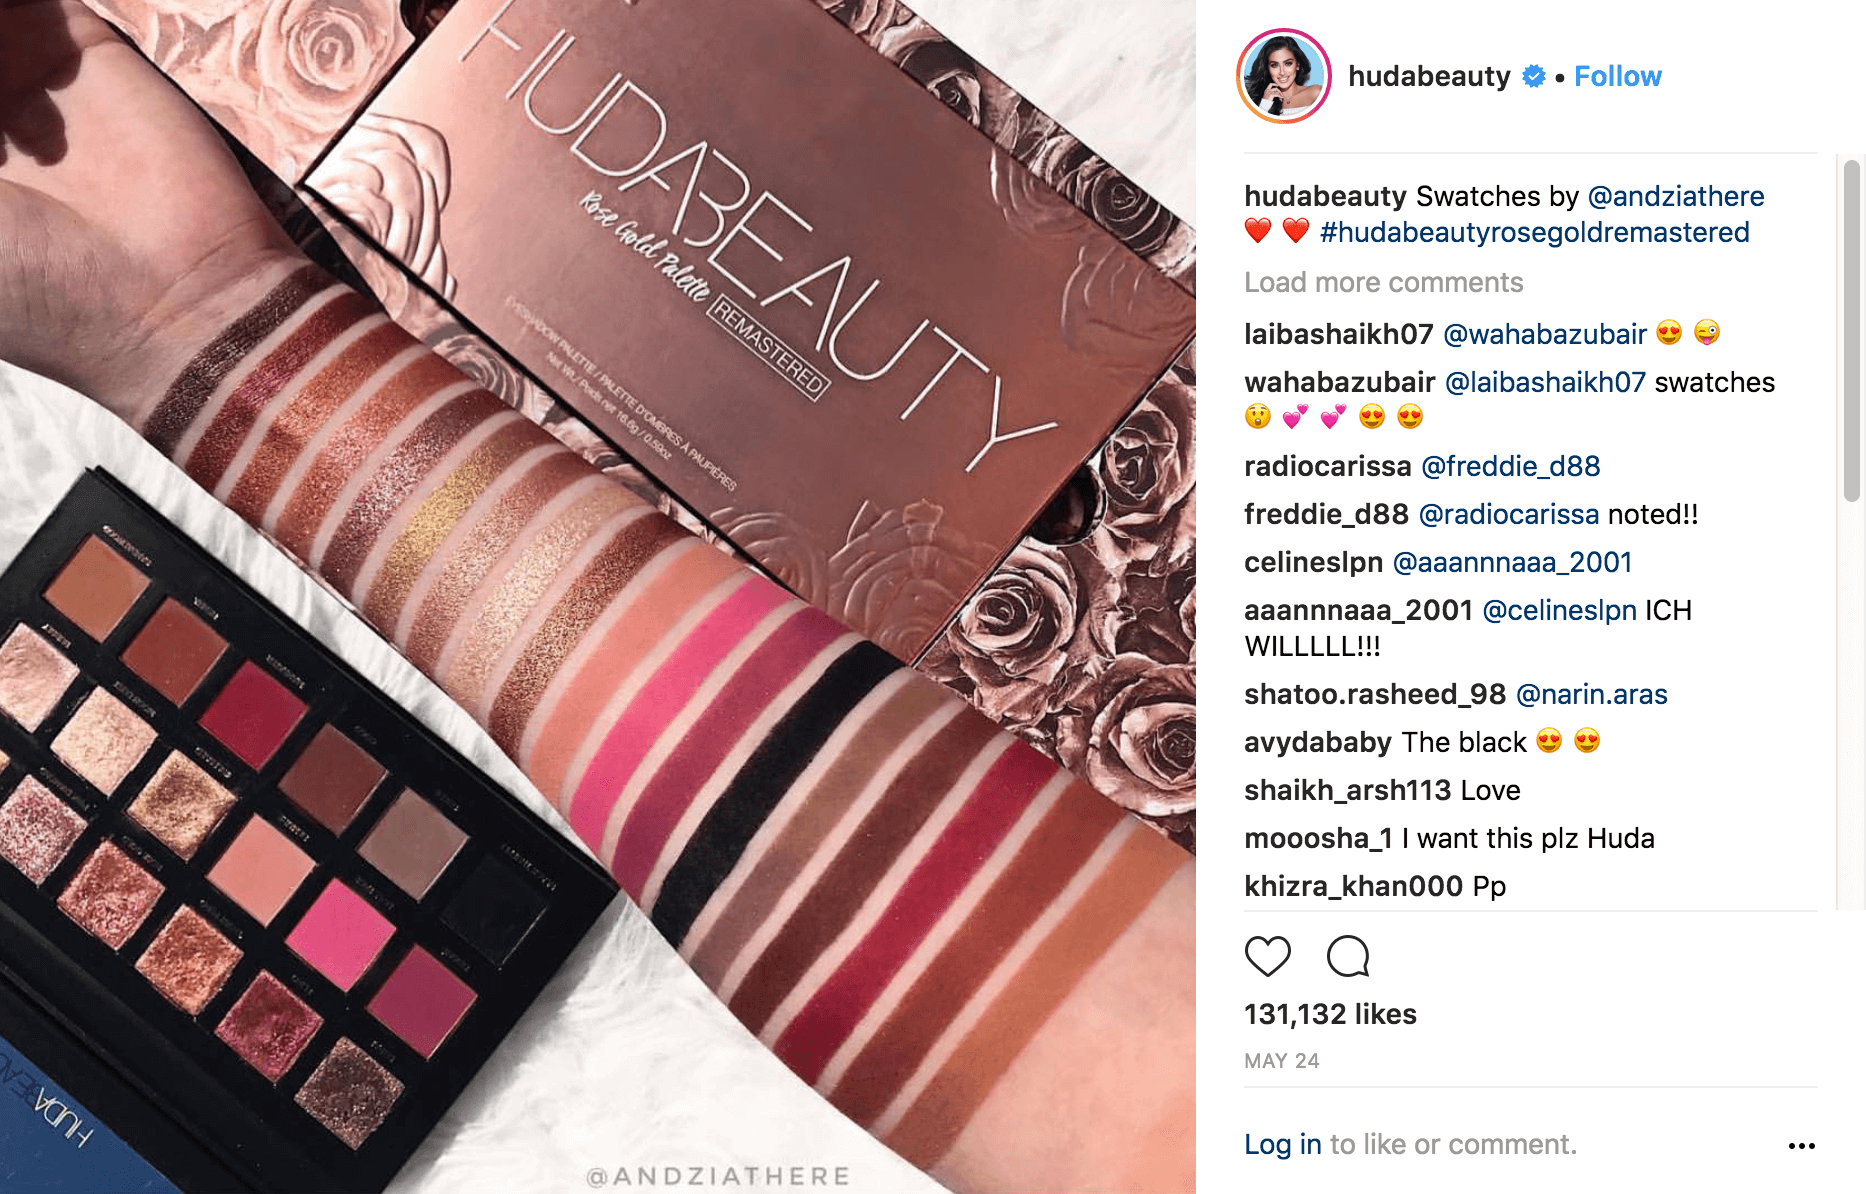 Un post réalisé par le compte Instagram hudabeauty montrant un swatch de maquillage.